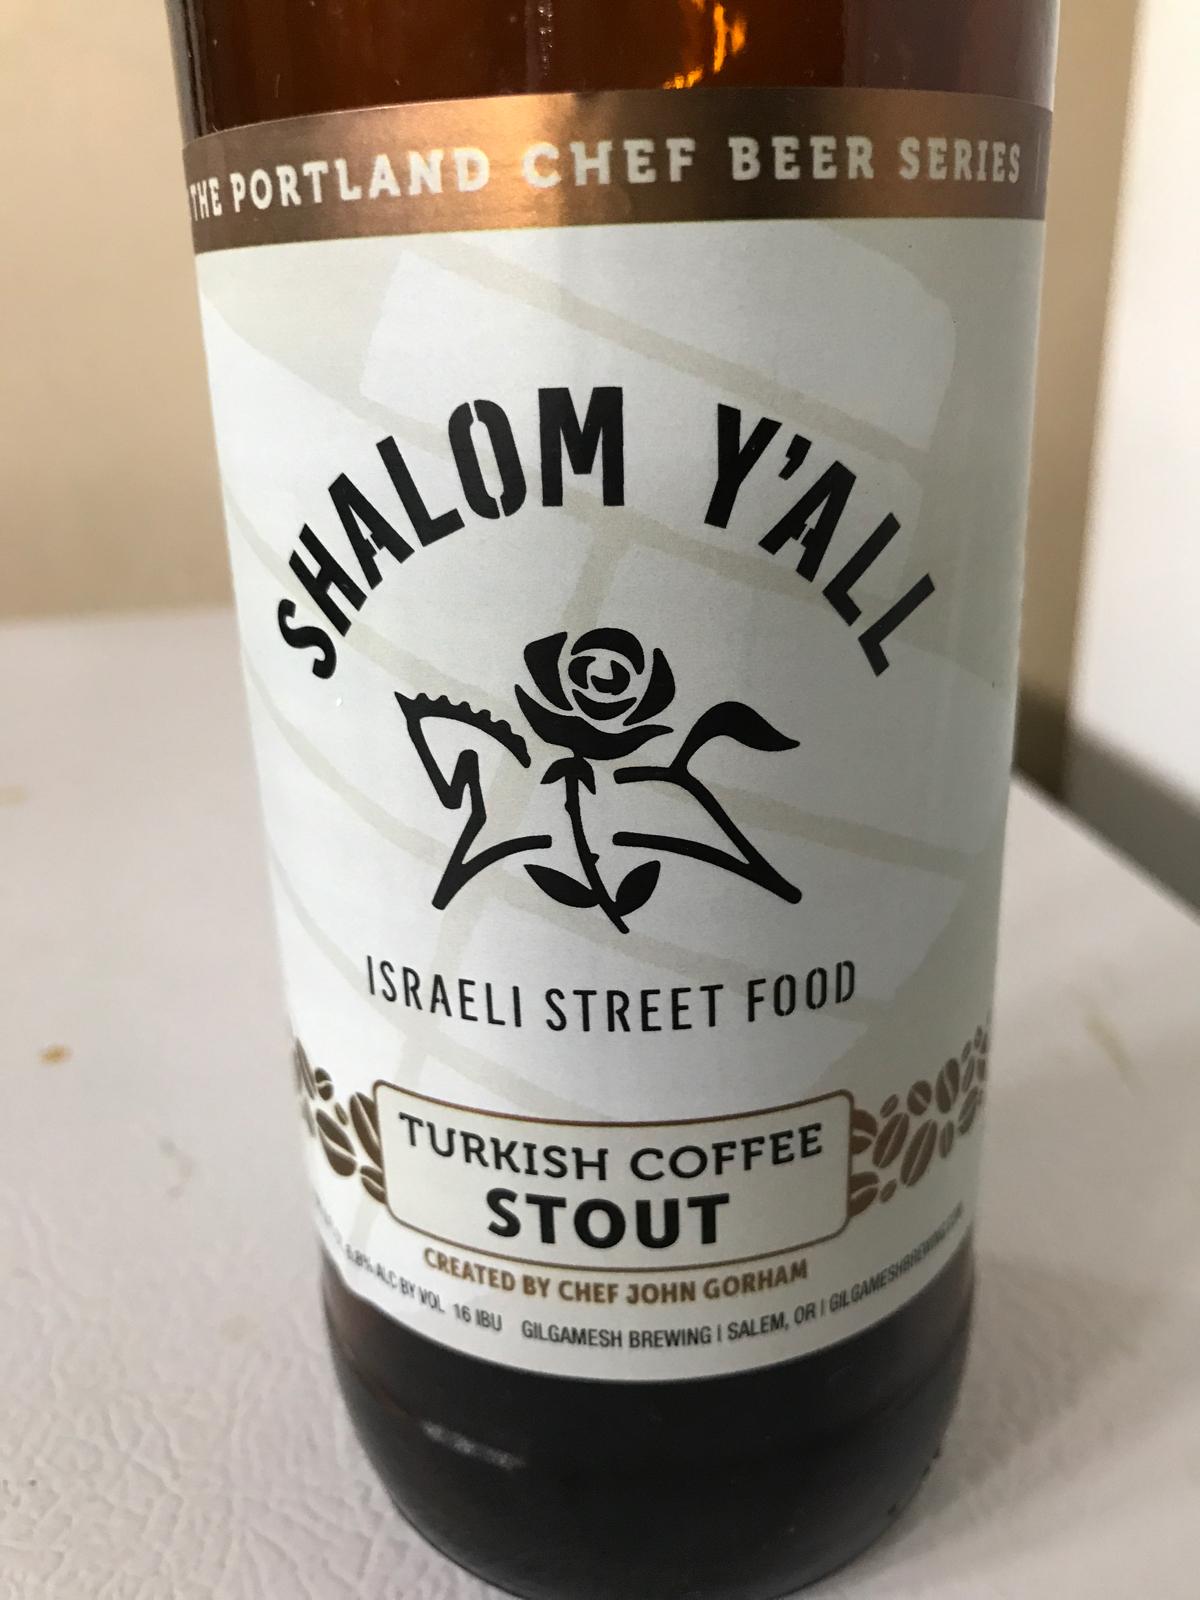 Shalom Y